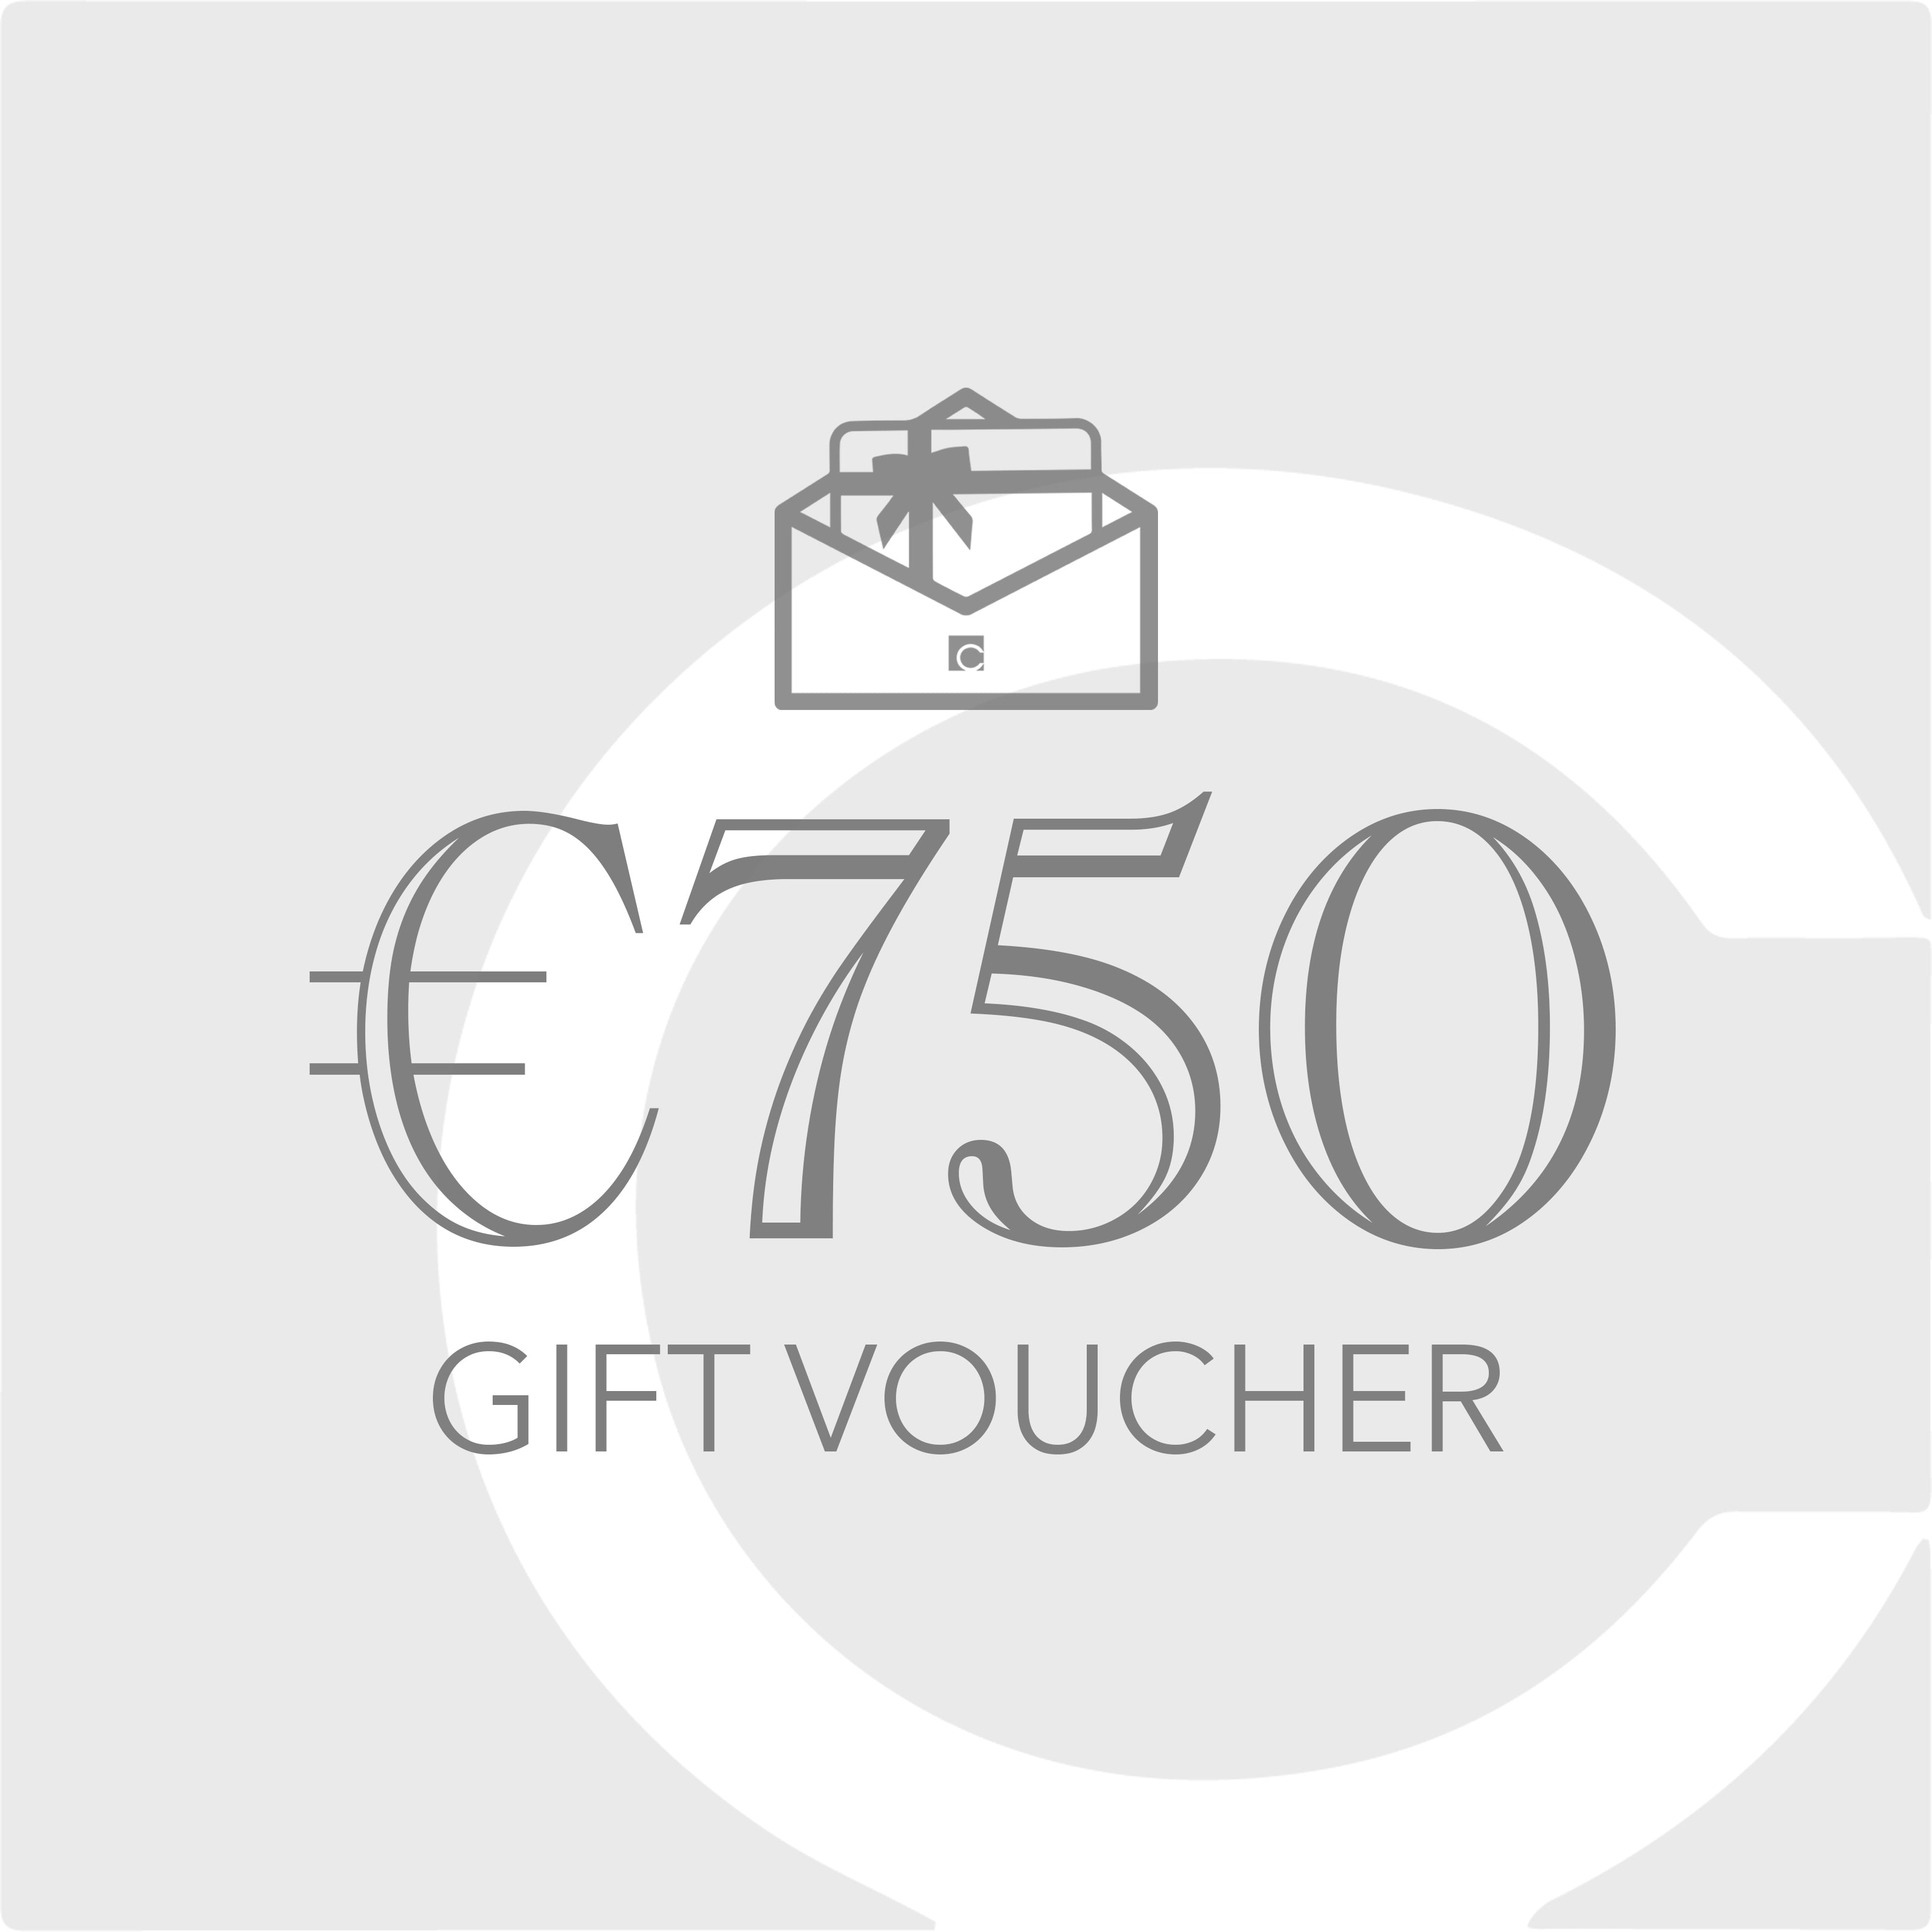 €750 Gift Voucher